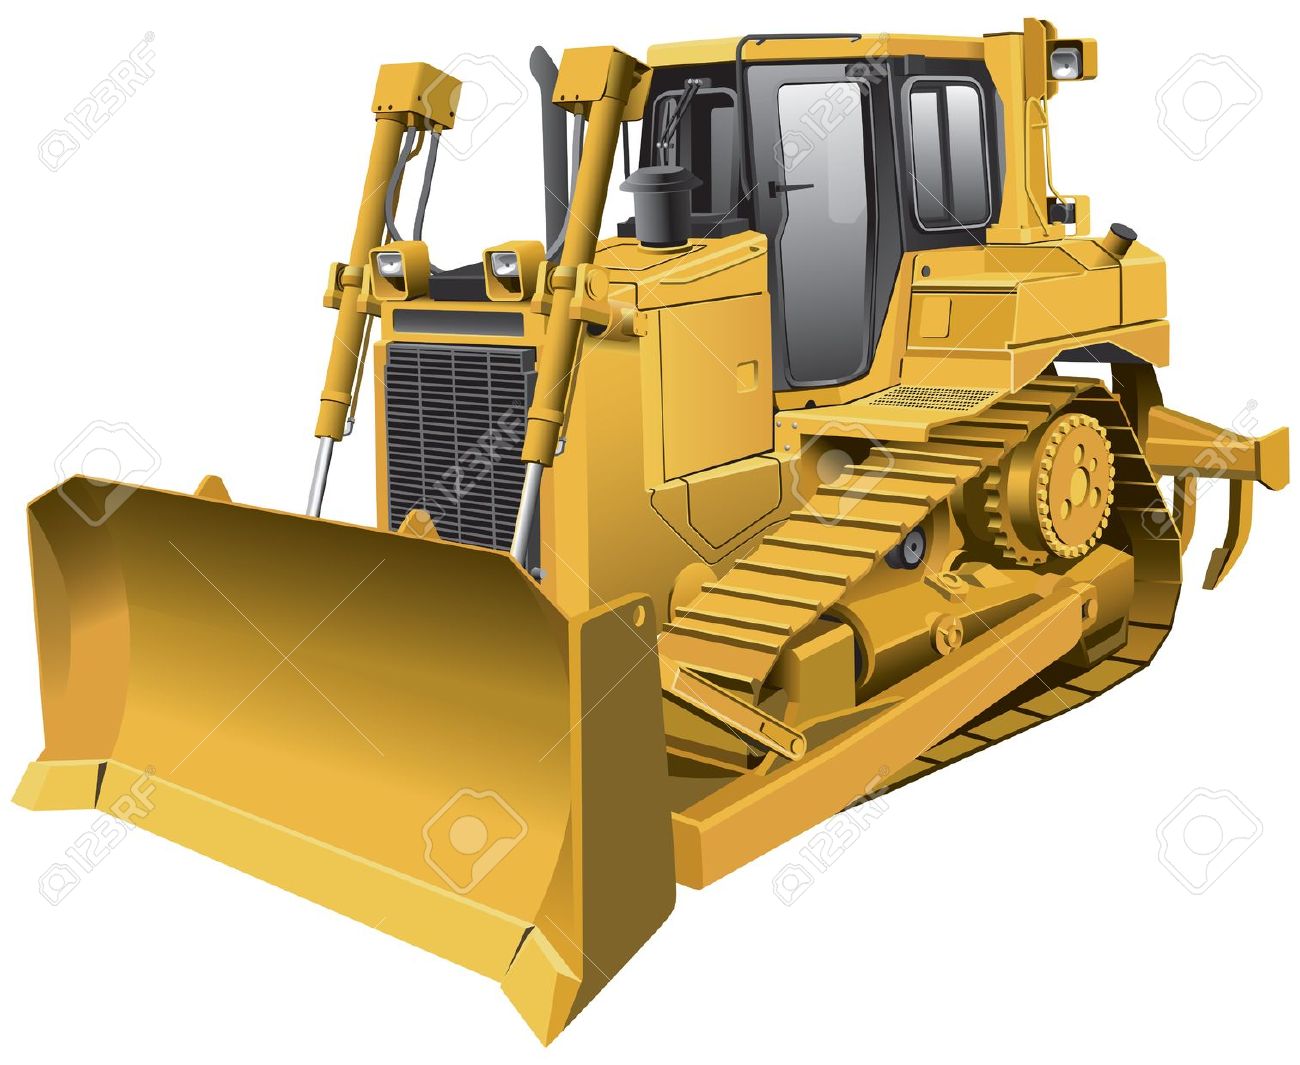 bulldozer: Detailed image of .